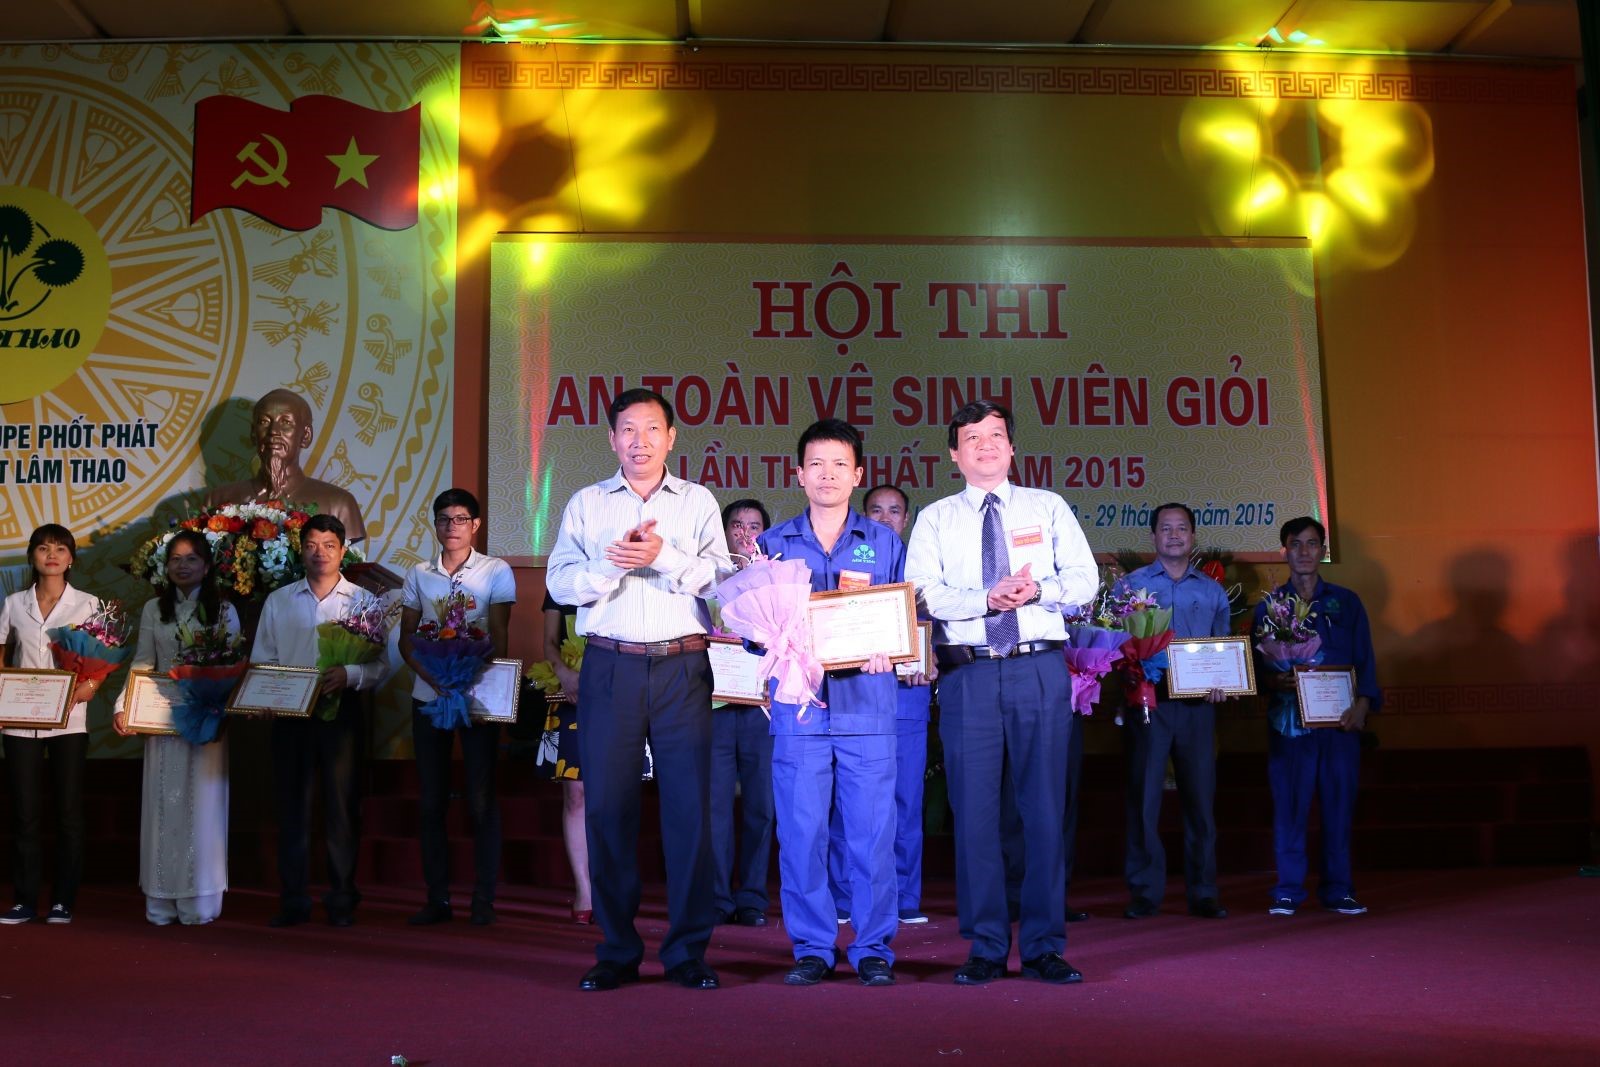 Công ty CP Supe phốt phát và hóa chất Lâm Thao: Tổ chức thành công Hội thi “An toàn viên vệ sinh viên giỏi” năm 2015